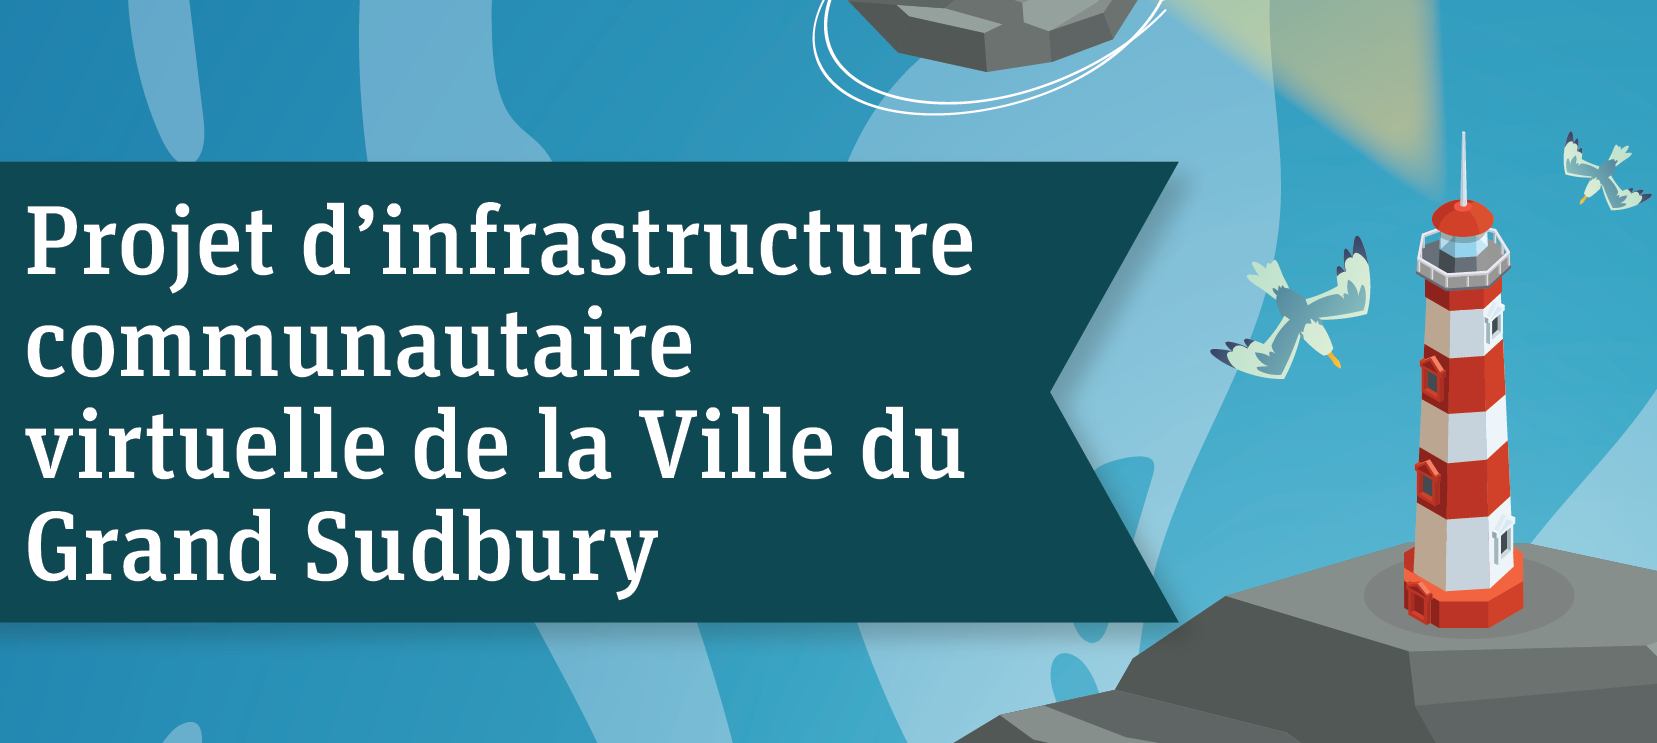 Projet d’infrastructure communautaire virtuelle de la Ville du Grand Sudbury 